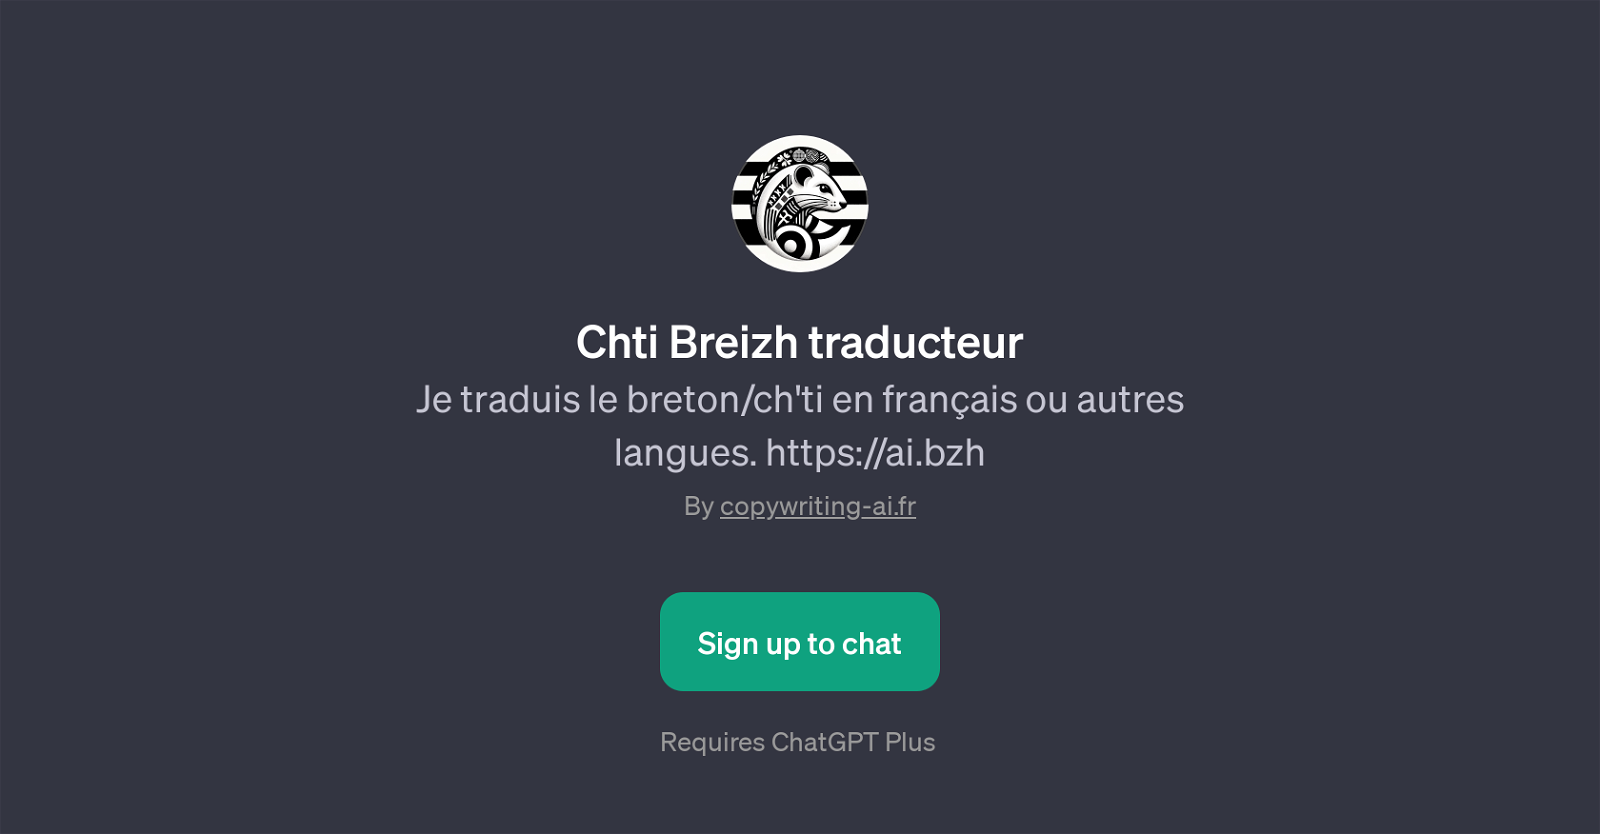 Chti Breizh traducteur website